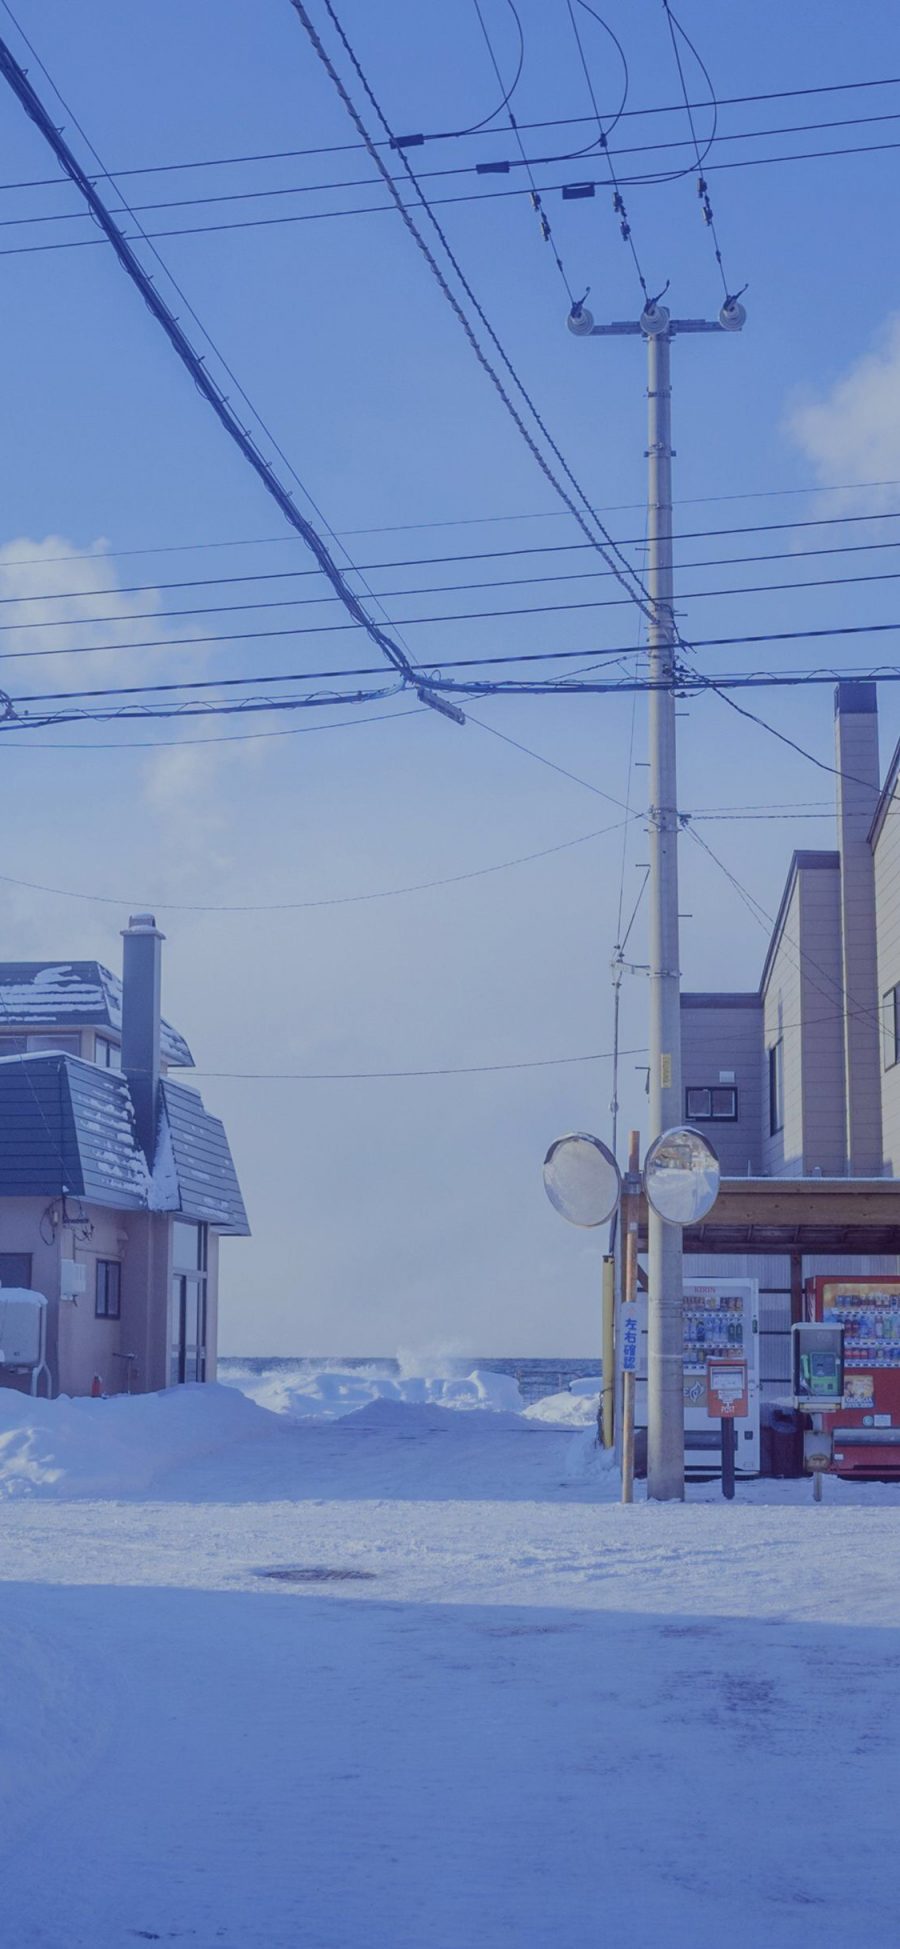 [2436×1125]雪景 冬季 雪地 房屋 天线 苹果手机壁纸图片